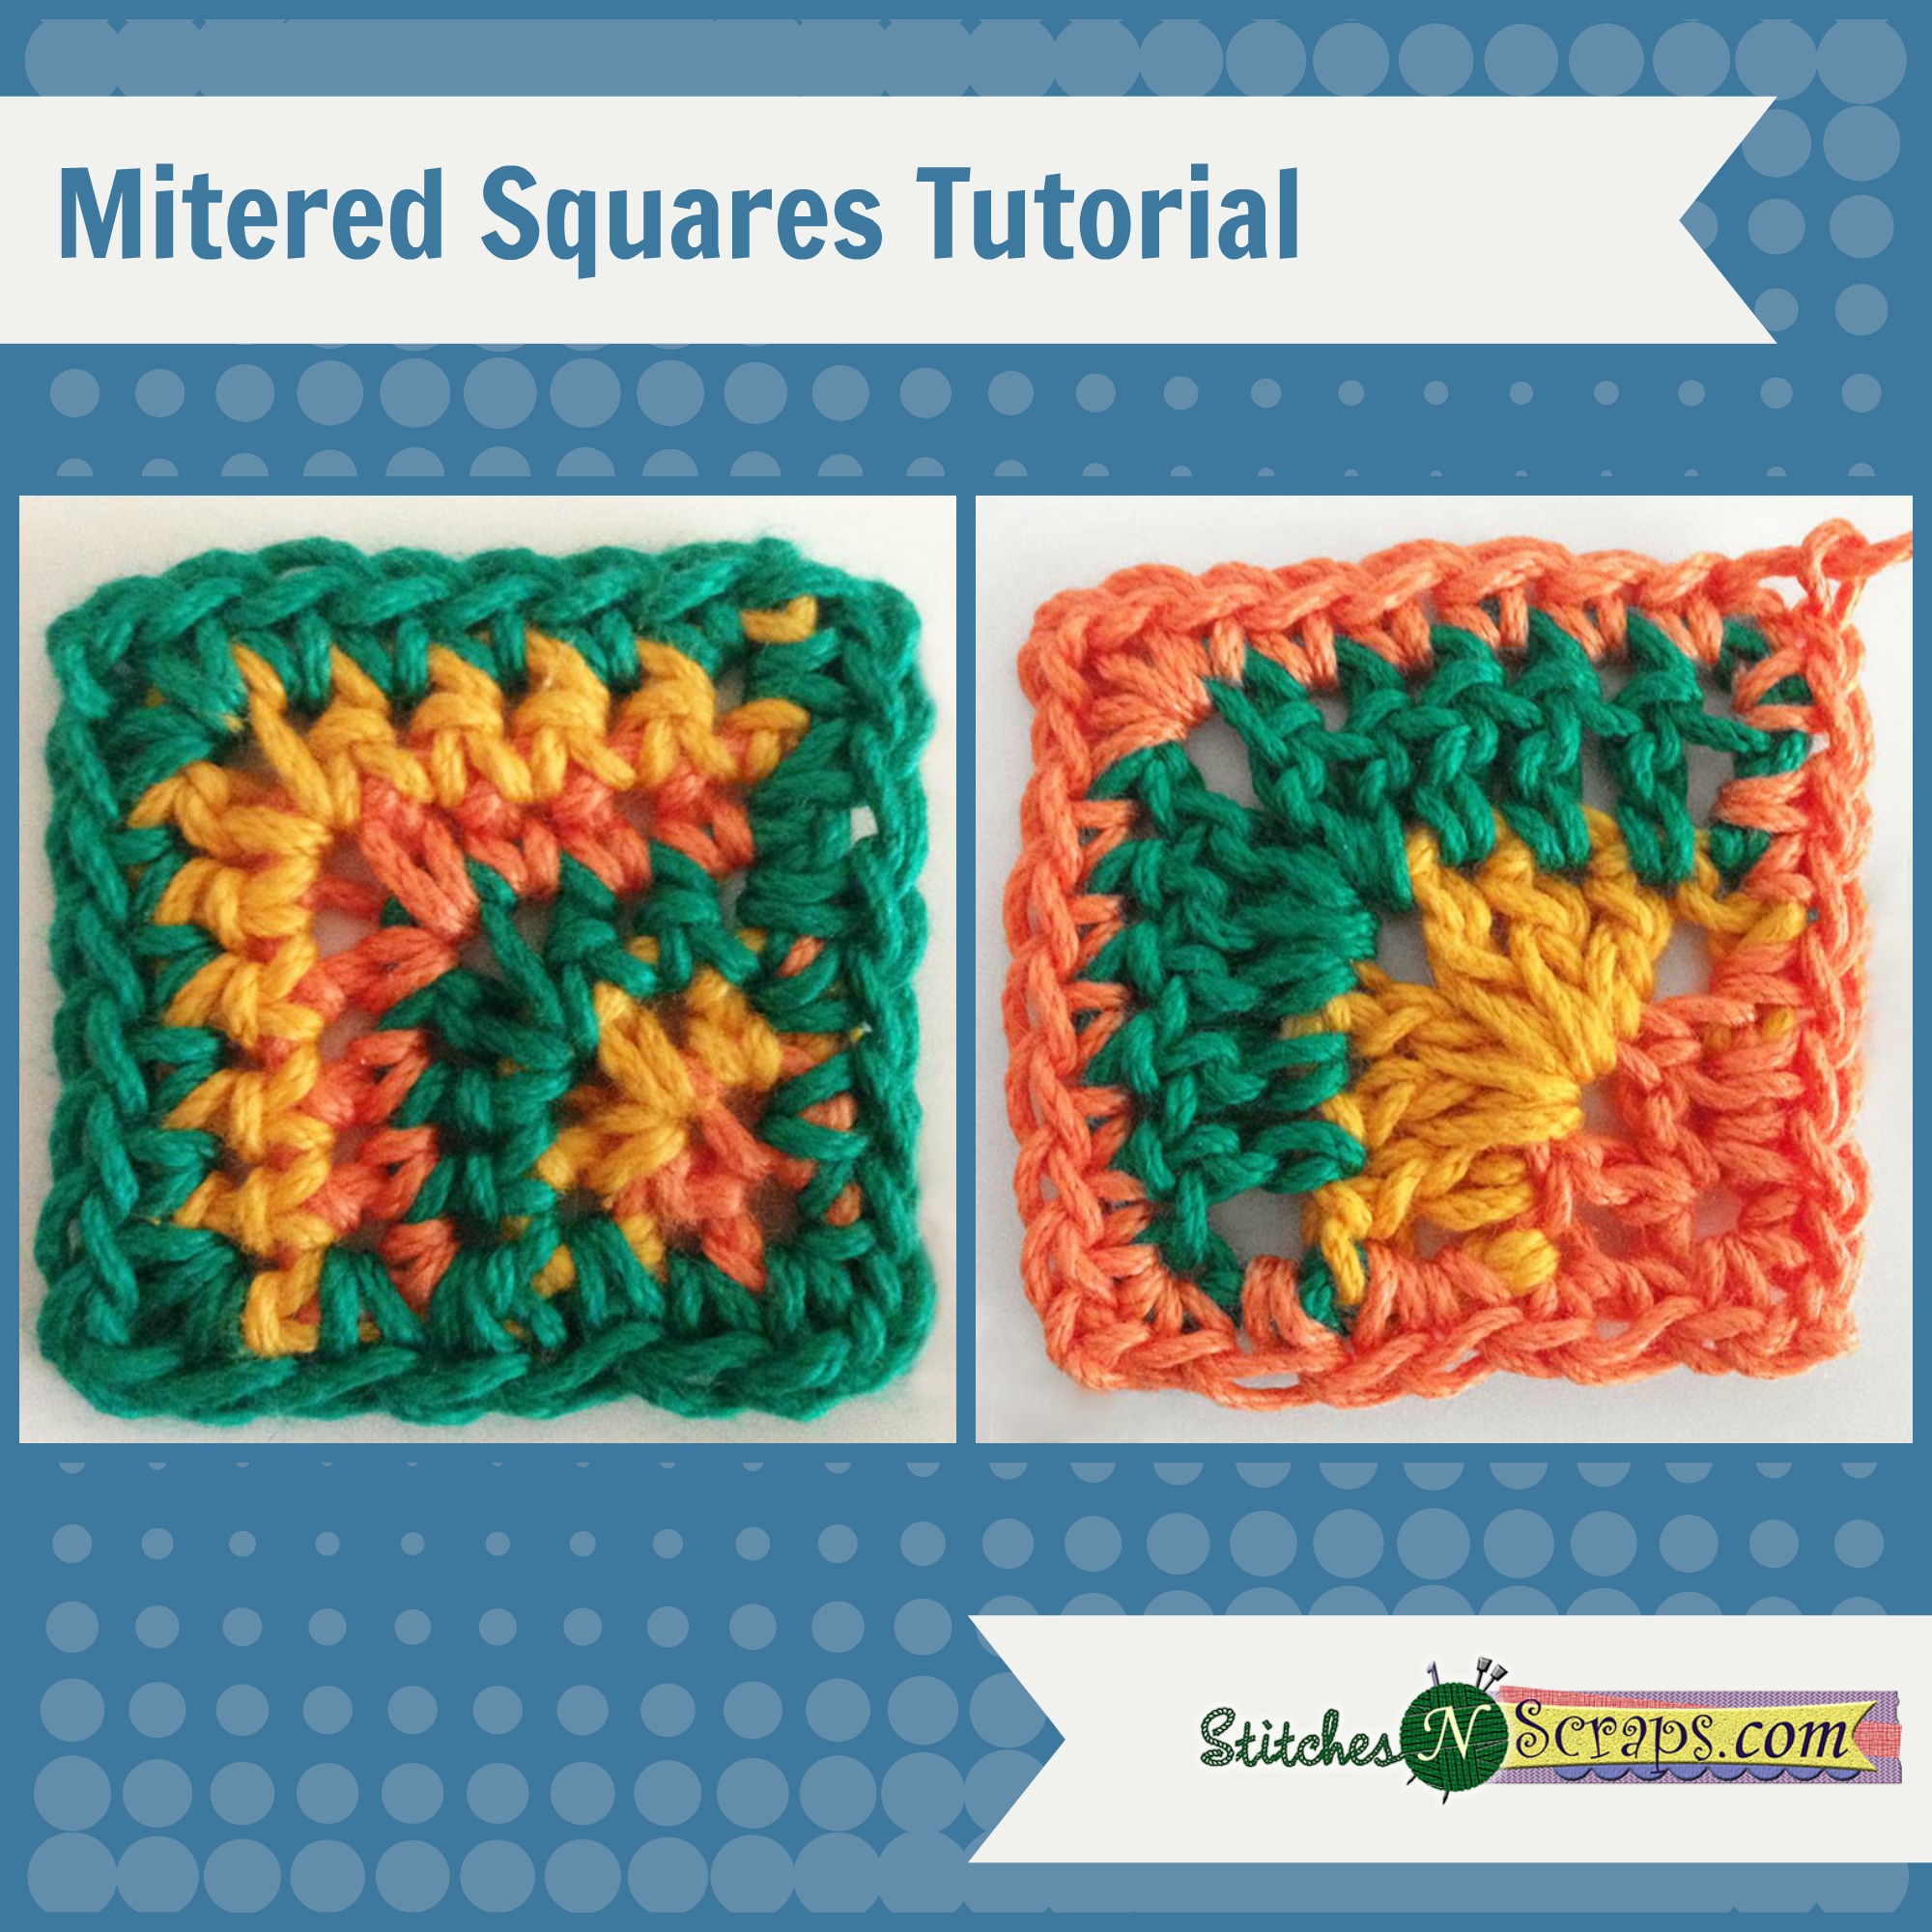 Mitered Squares Tutorial on StitchesNScraps.com